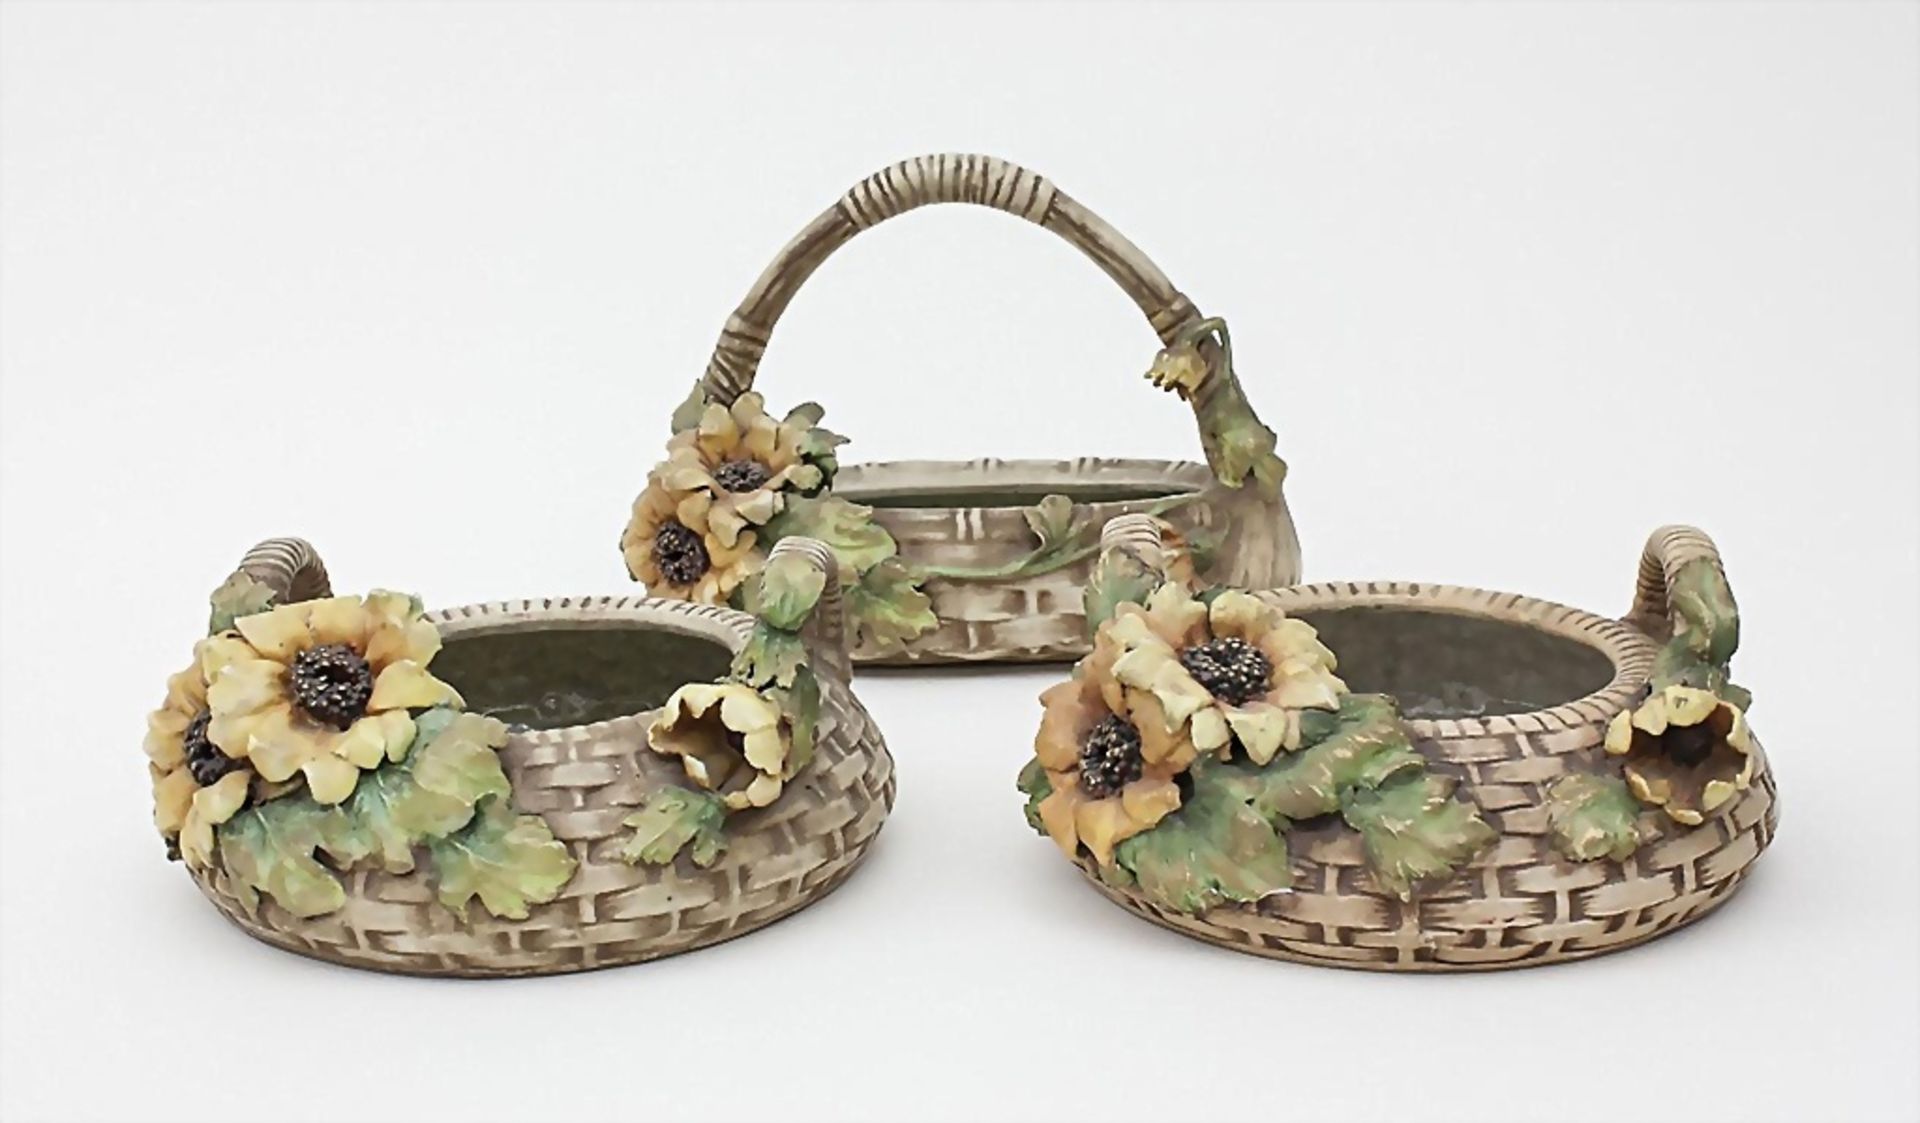 3 Jugendstil-Korbschalen mit Sonnenblumen/3 Art Nouveau Ceramic Baskets with Sunflowers, ...